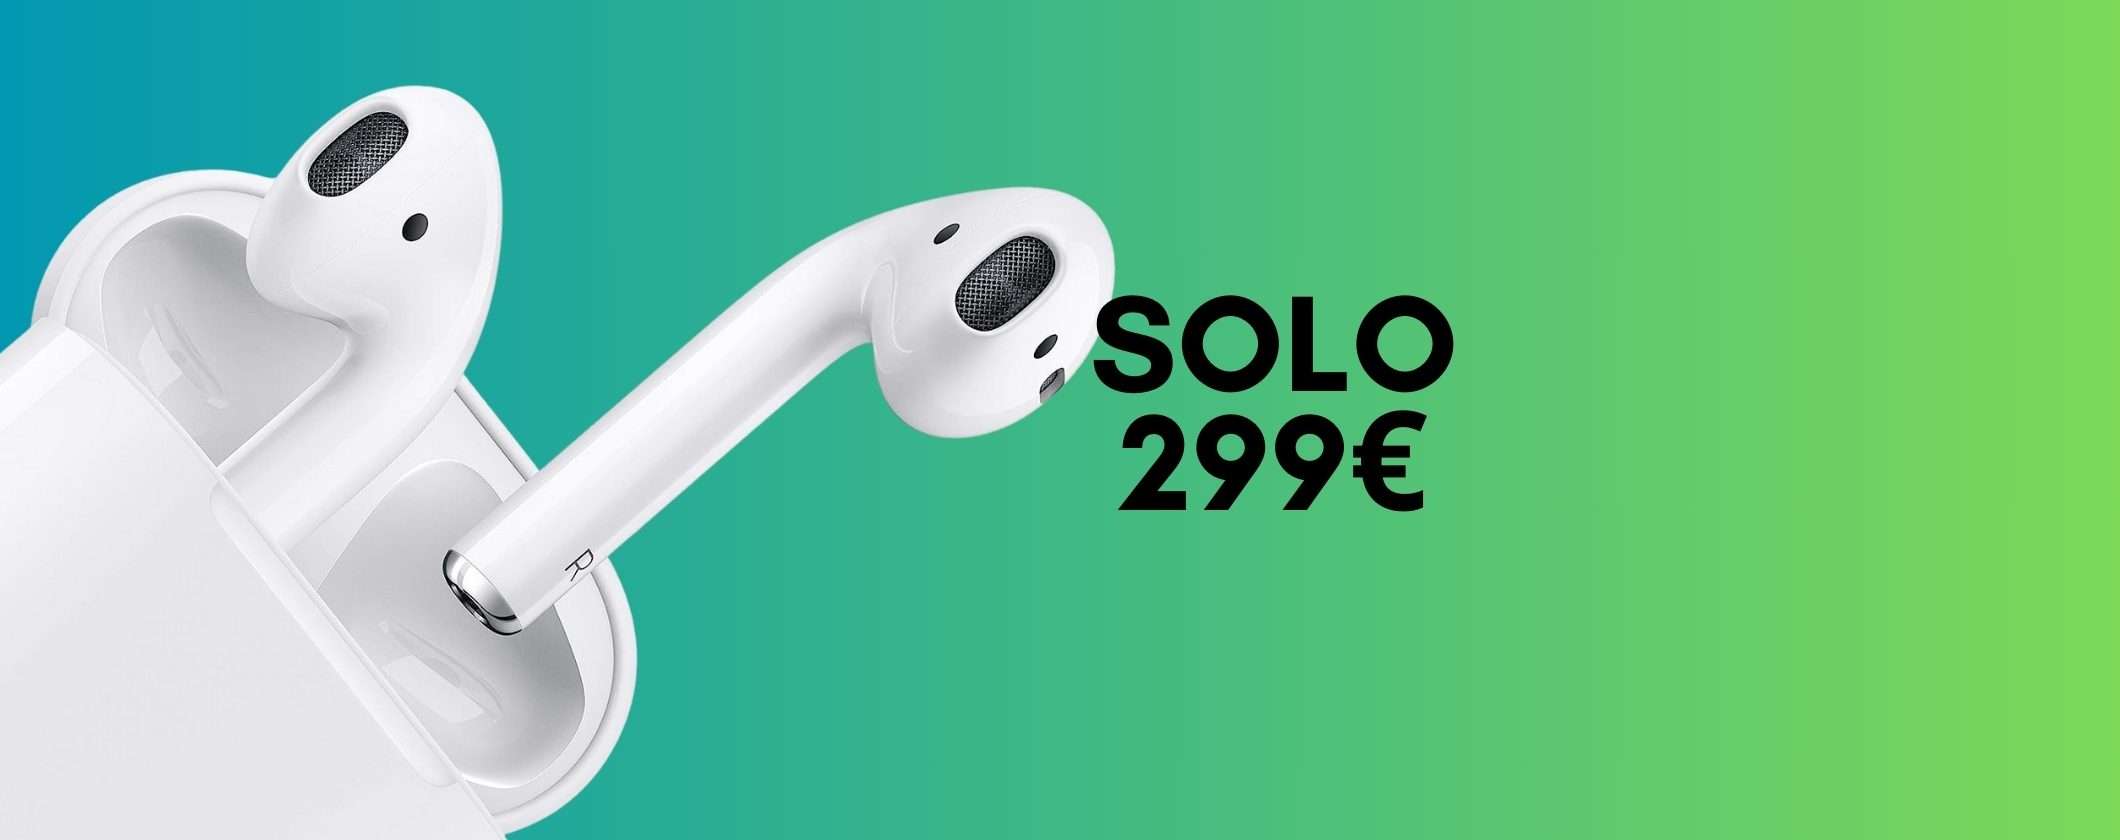 Apple AirPods 2 a 99€: un SOGNO che diventa realtà su Amazon